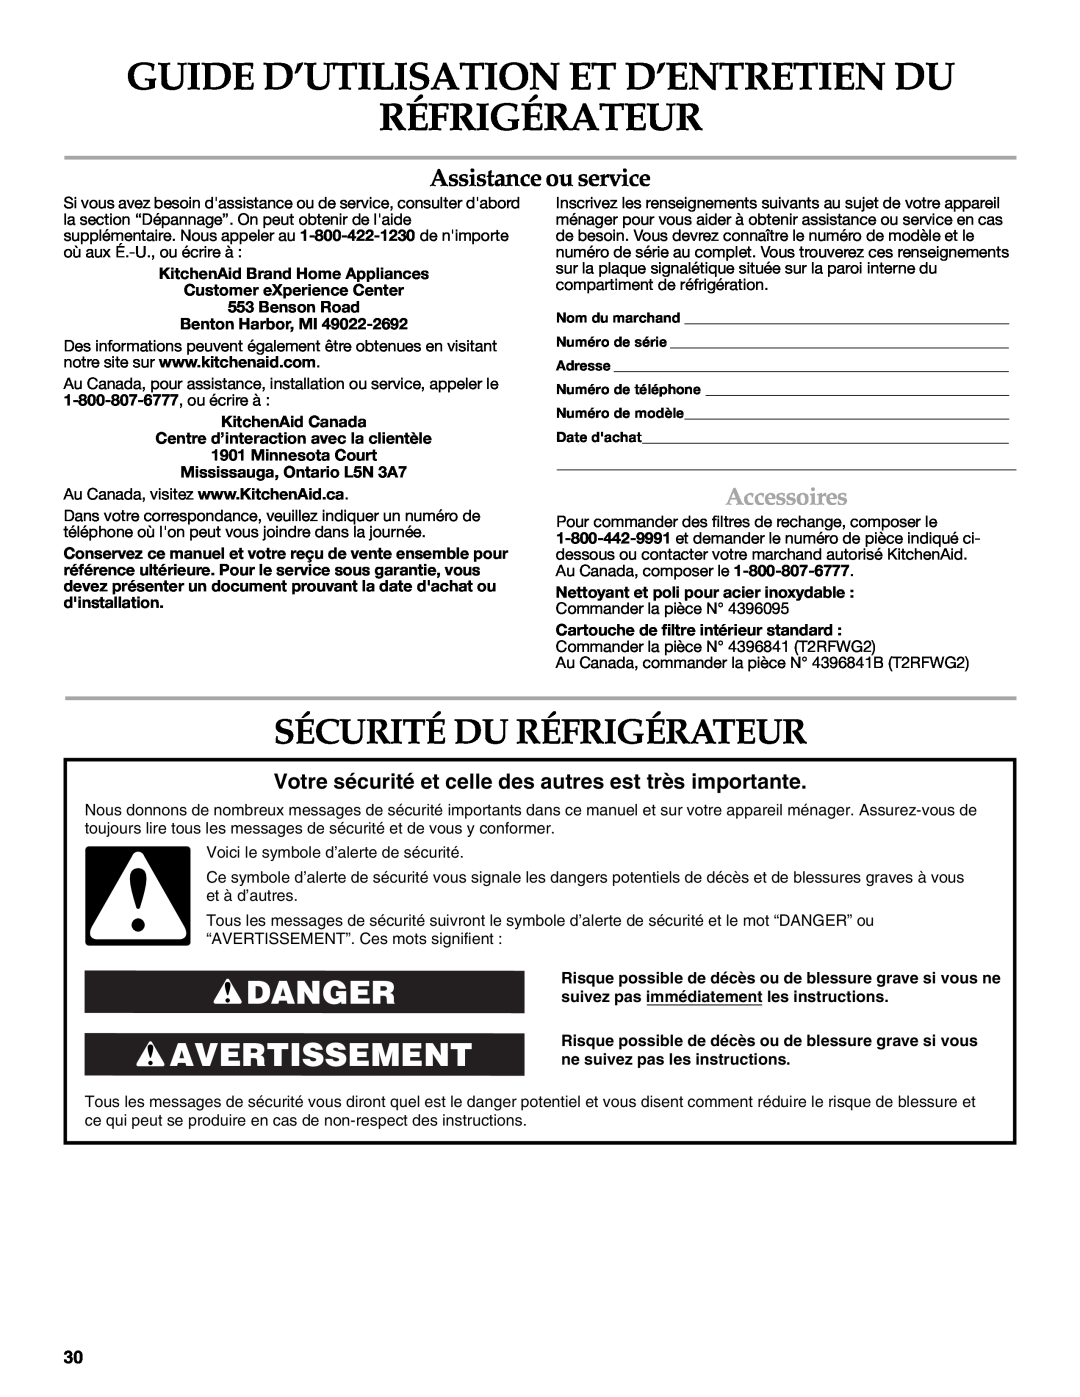 KitchenAid KSRT25CRWH00 Guide D’Utilisation Et D’Entretien Du Réfrigérateur, Sécurité Du Réfrigérateur, Accessoires 